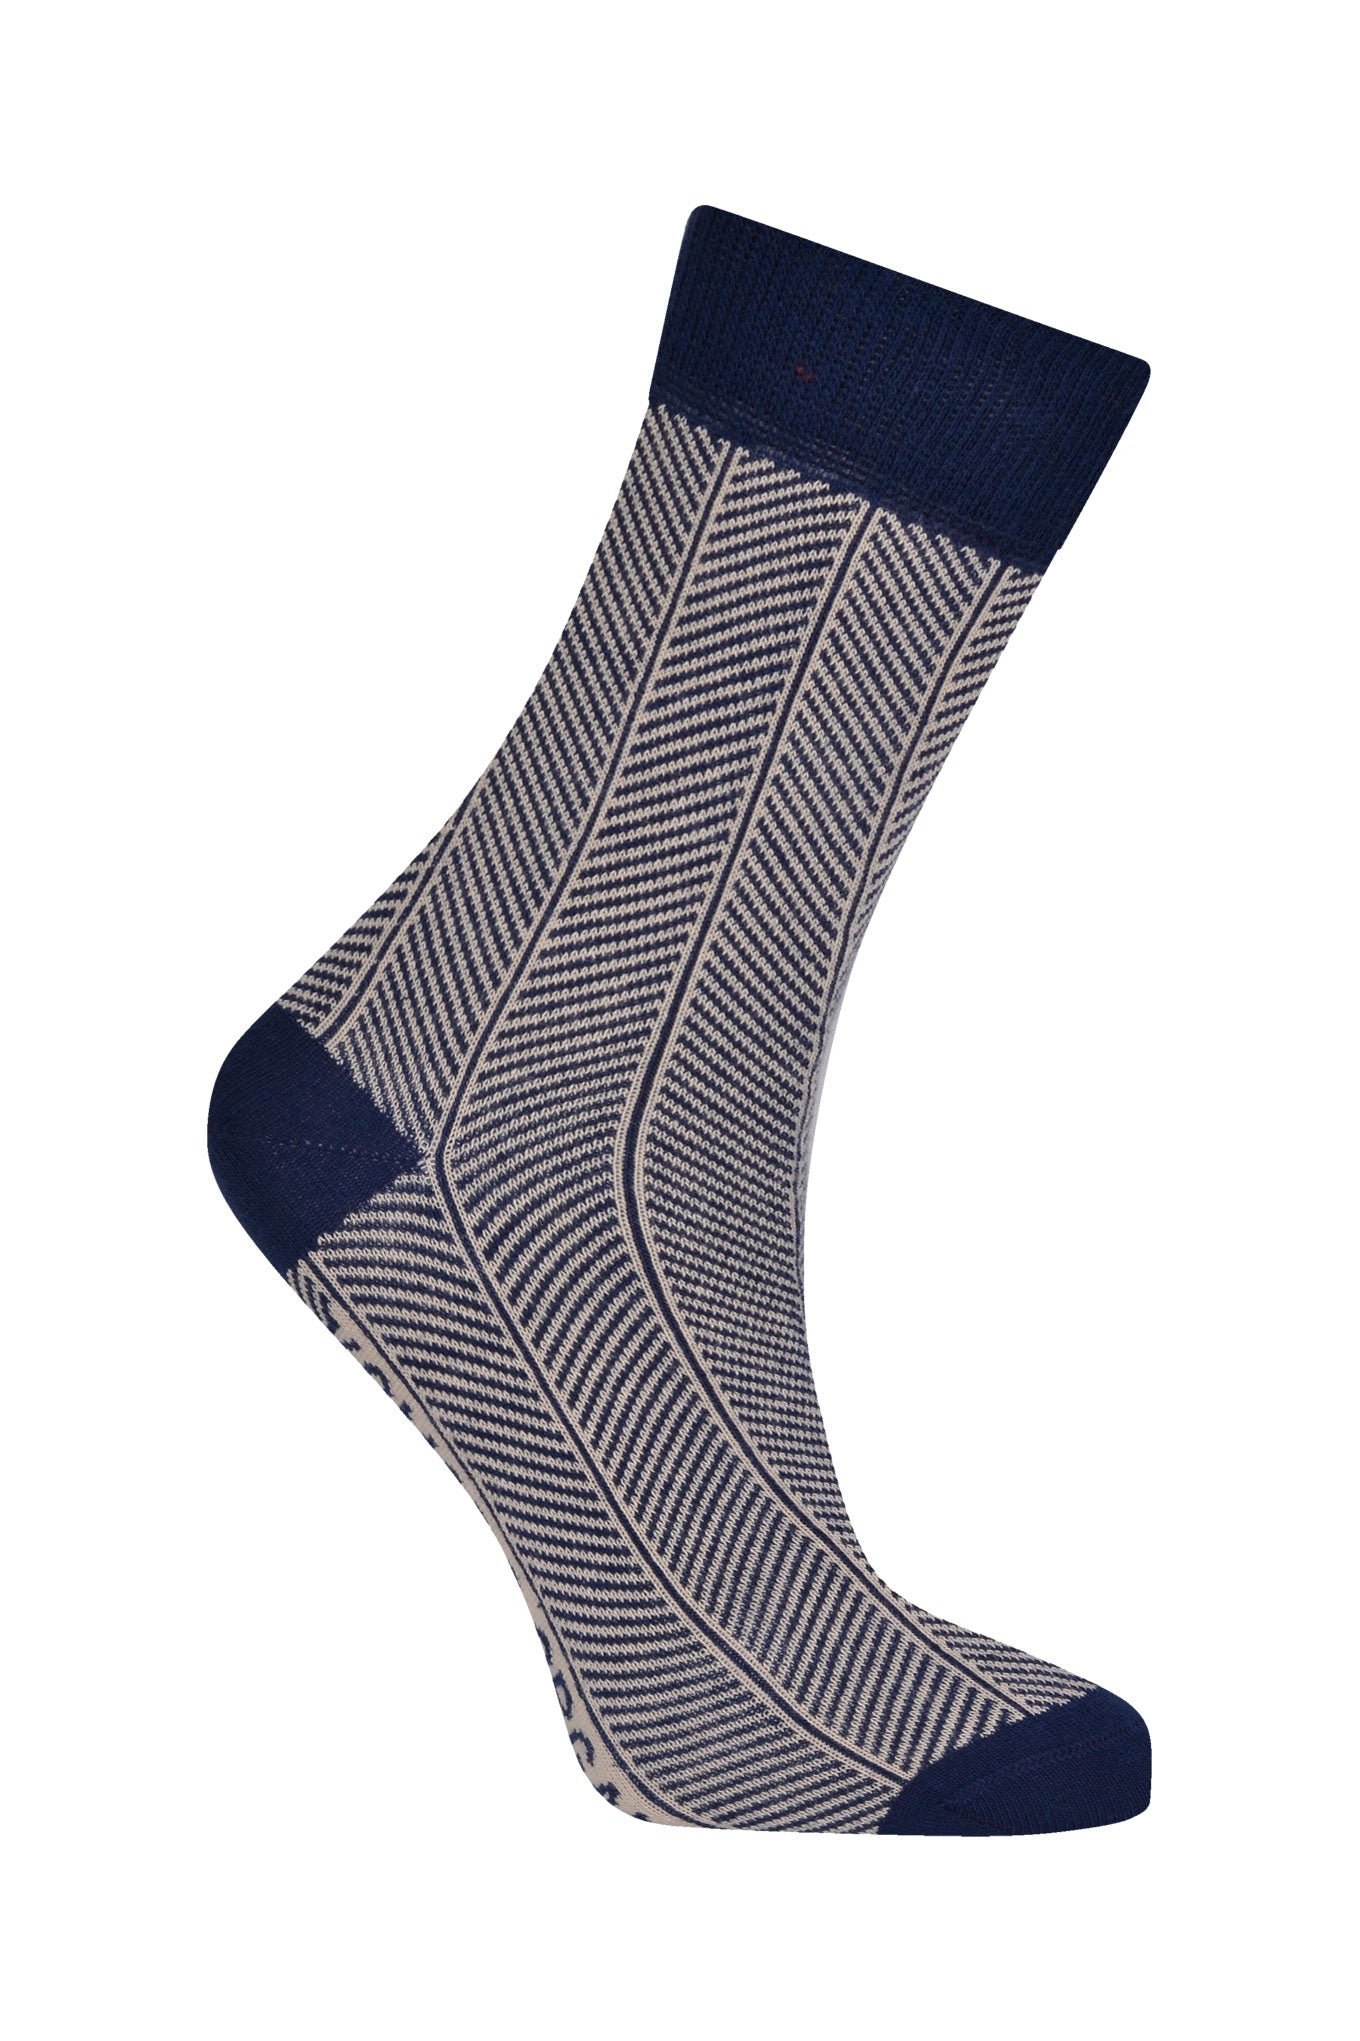 HERRINGBONE - Organic Cotton Socks Navy